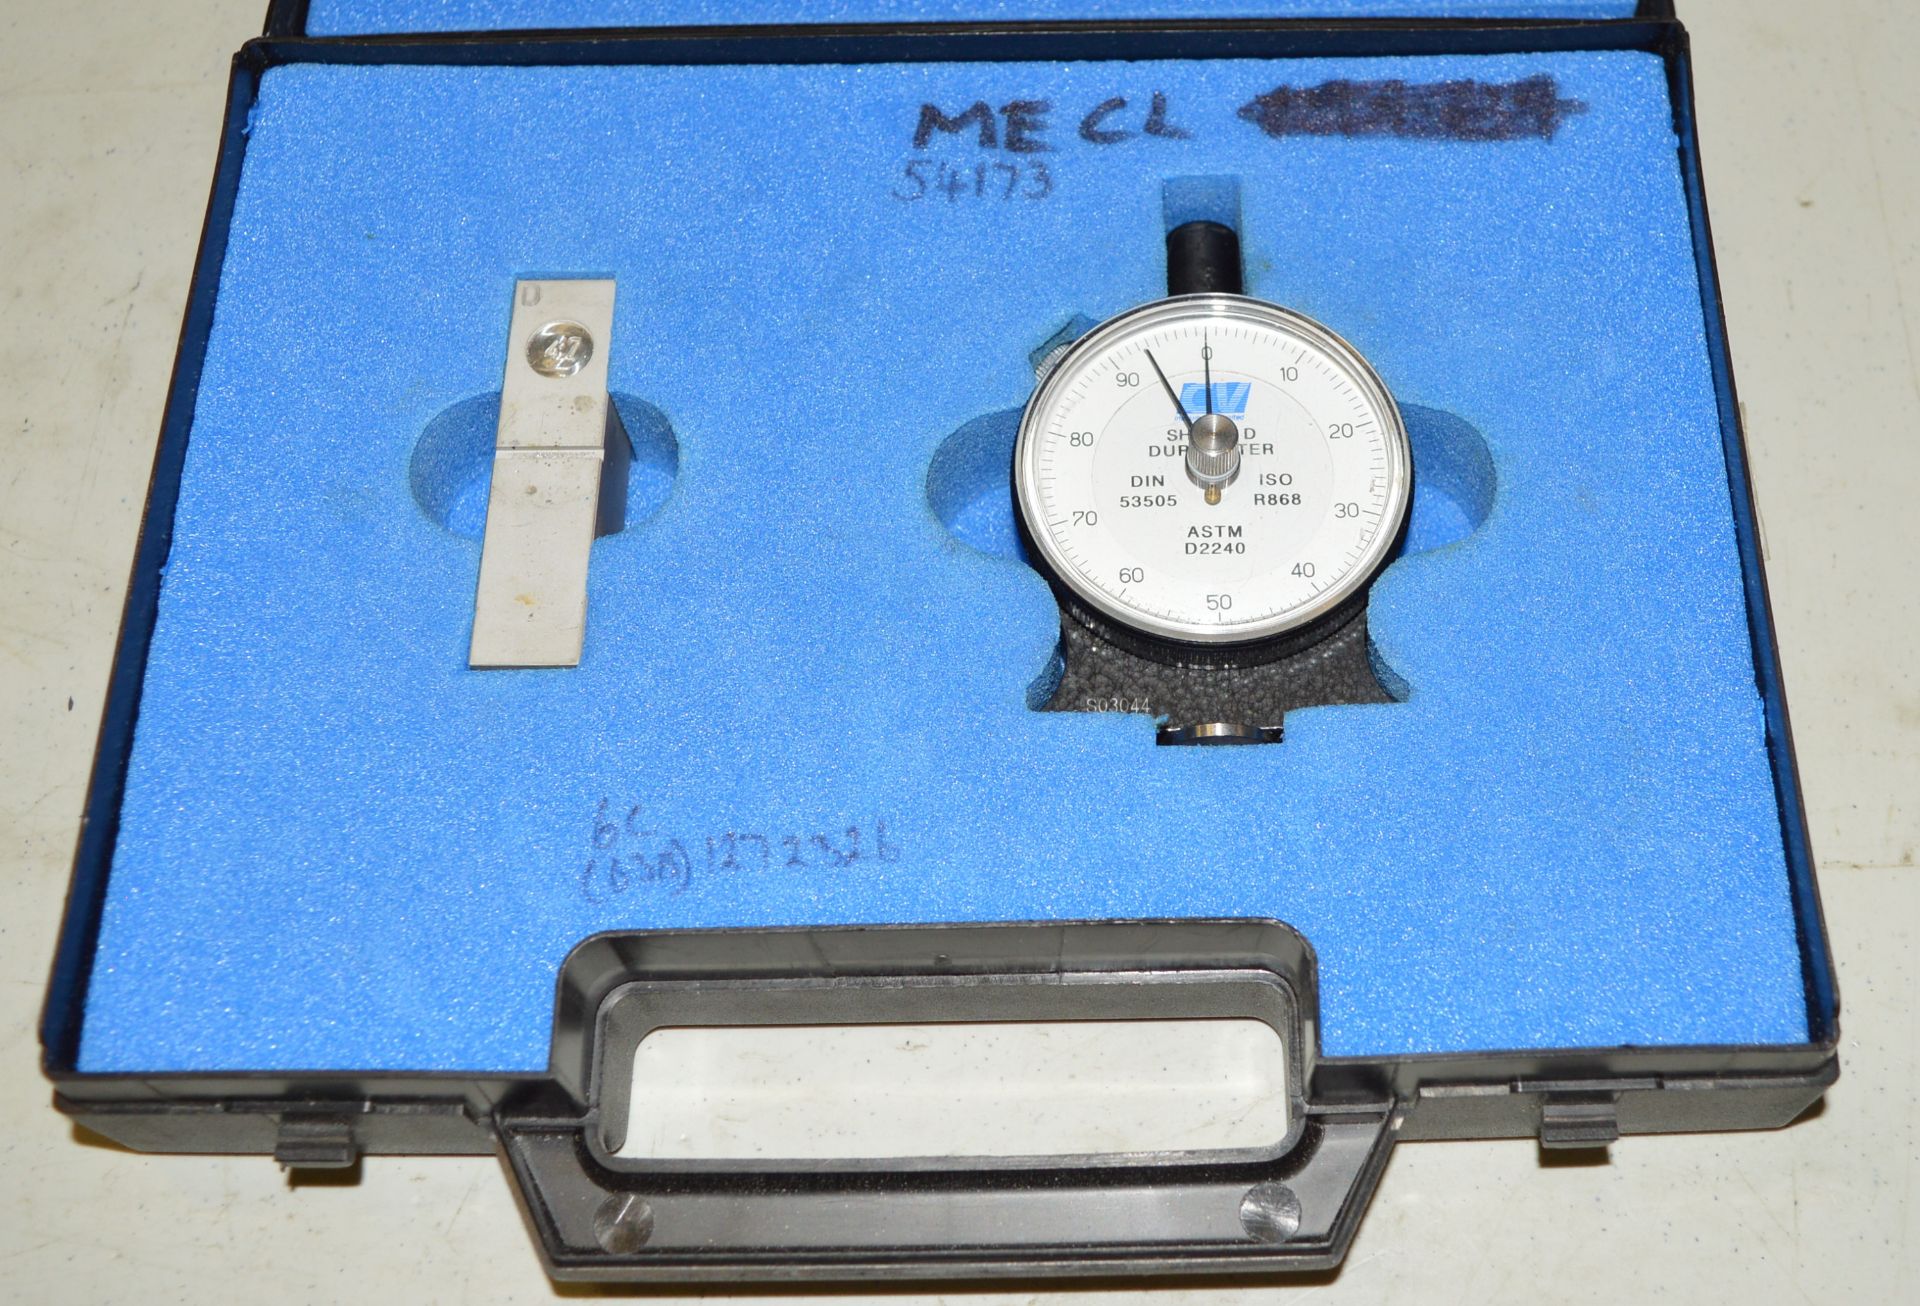 Micr4ometer Depth Gauge, M & W. Durometer Scale Hardness Tester,CV. - Image 2 of 3